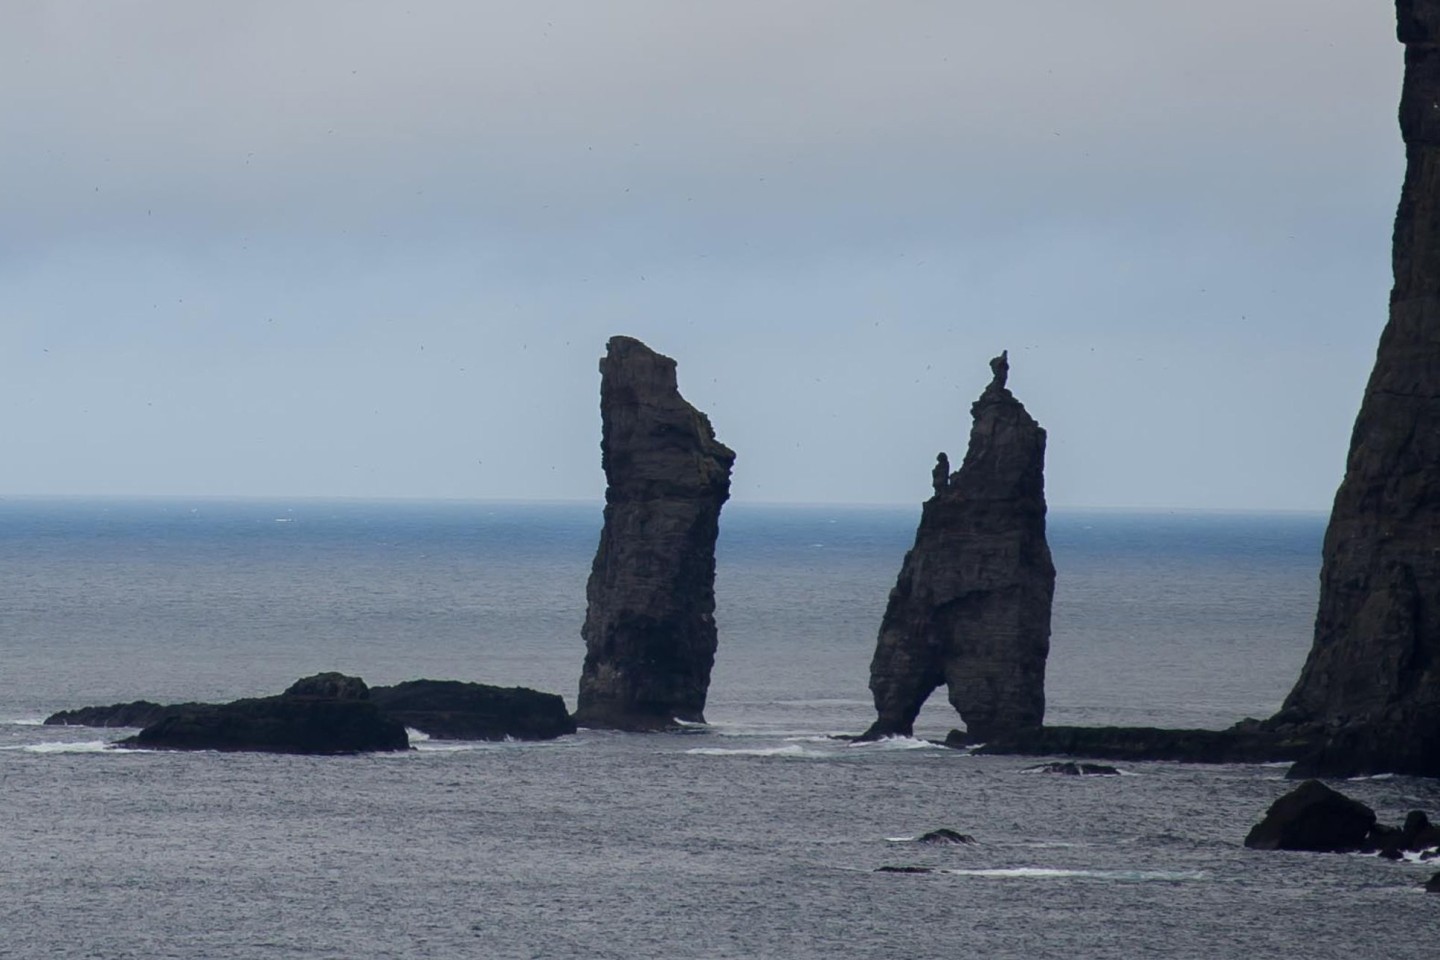 Die Naturdenkmäler Risin und Kellingin, zwei große Steinsäulen auf den Färöer-Inseln im Nordatlantik.